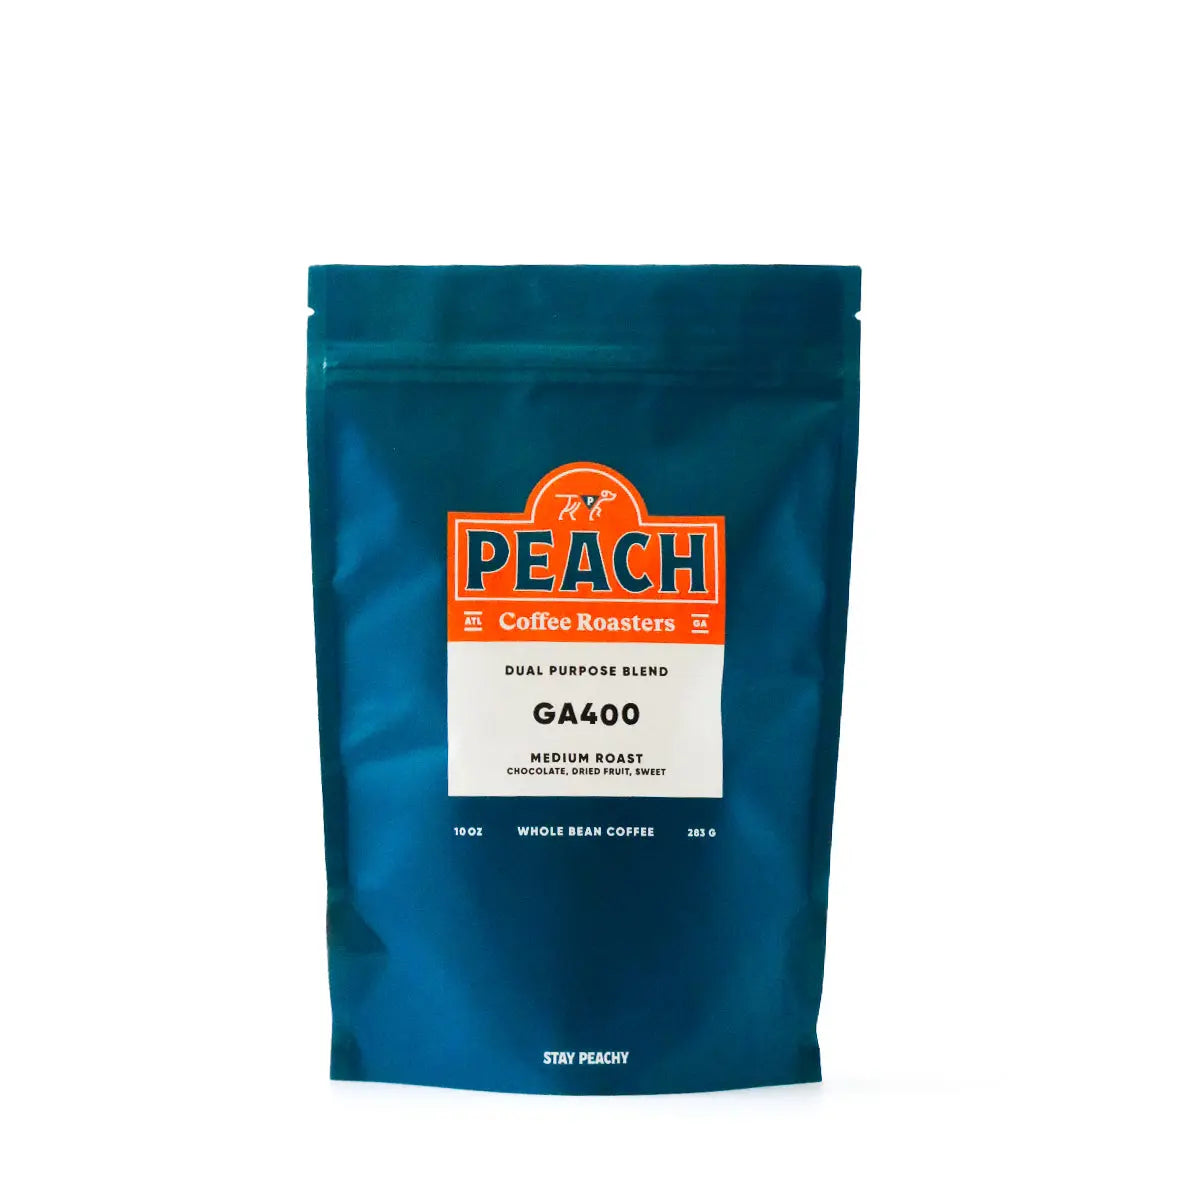 GA 400 - Medium Roast Blend Peach Coffee Roasters